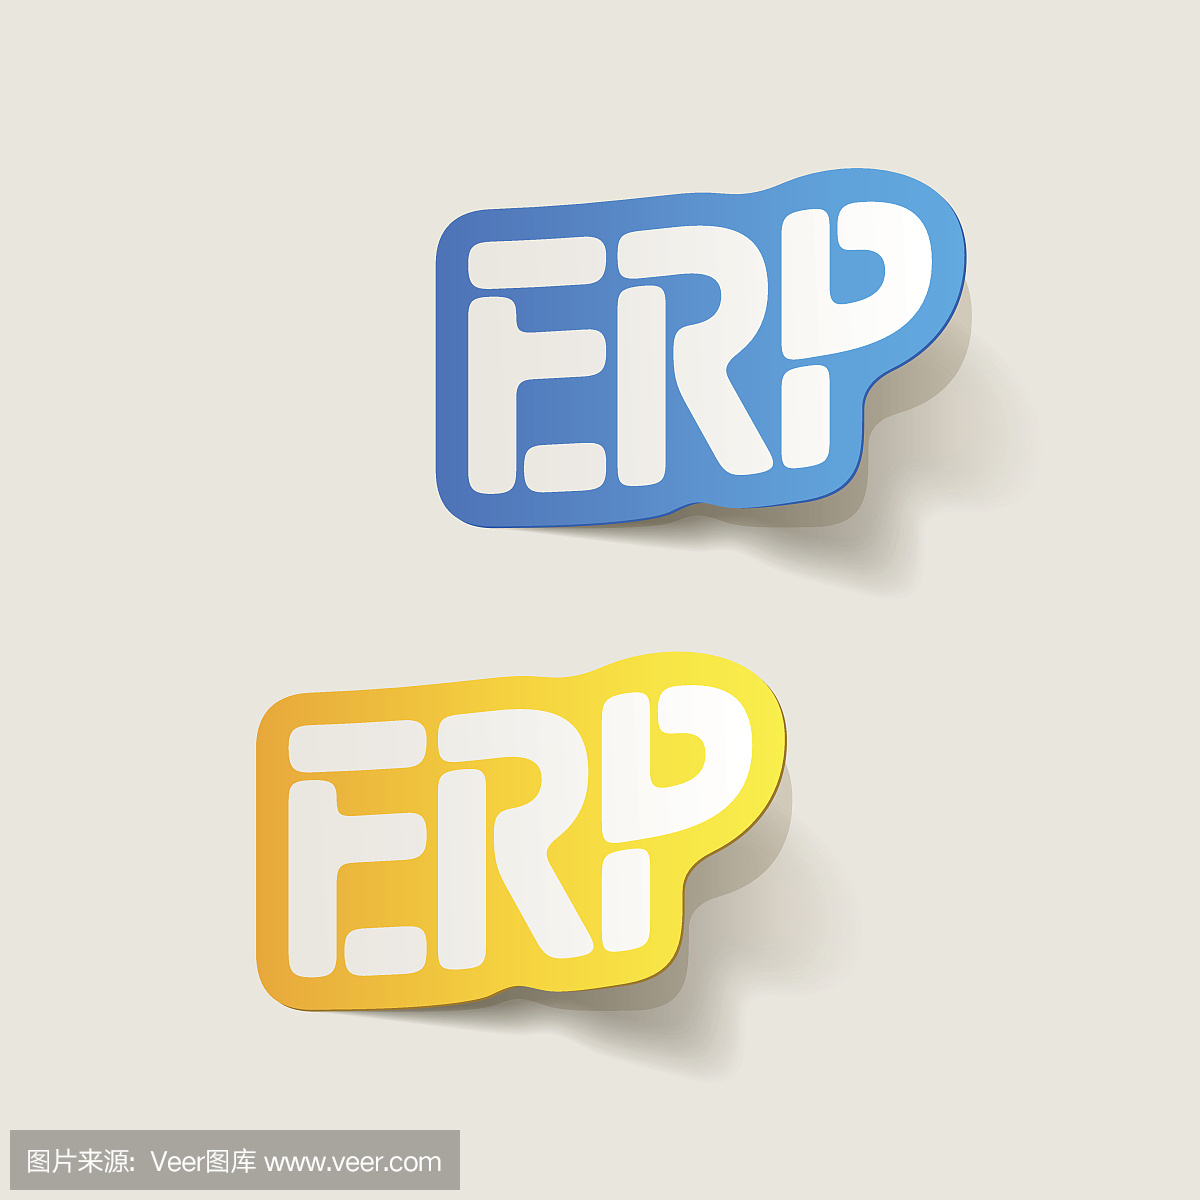 现实设计元素:ERP